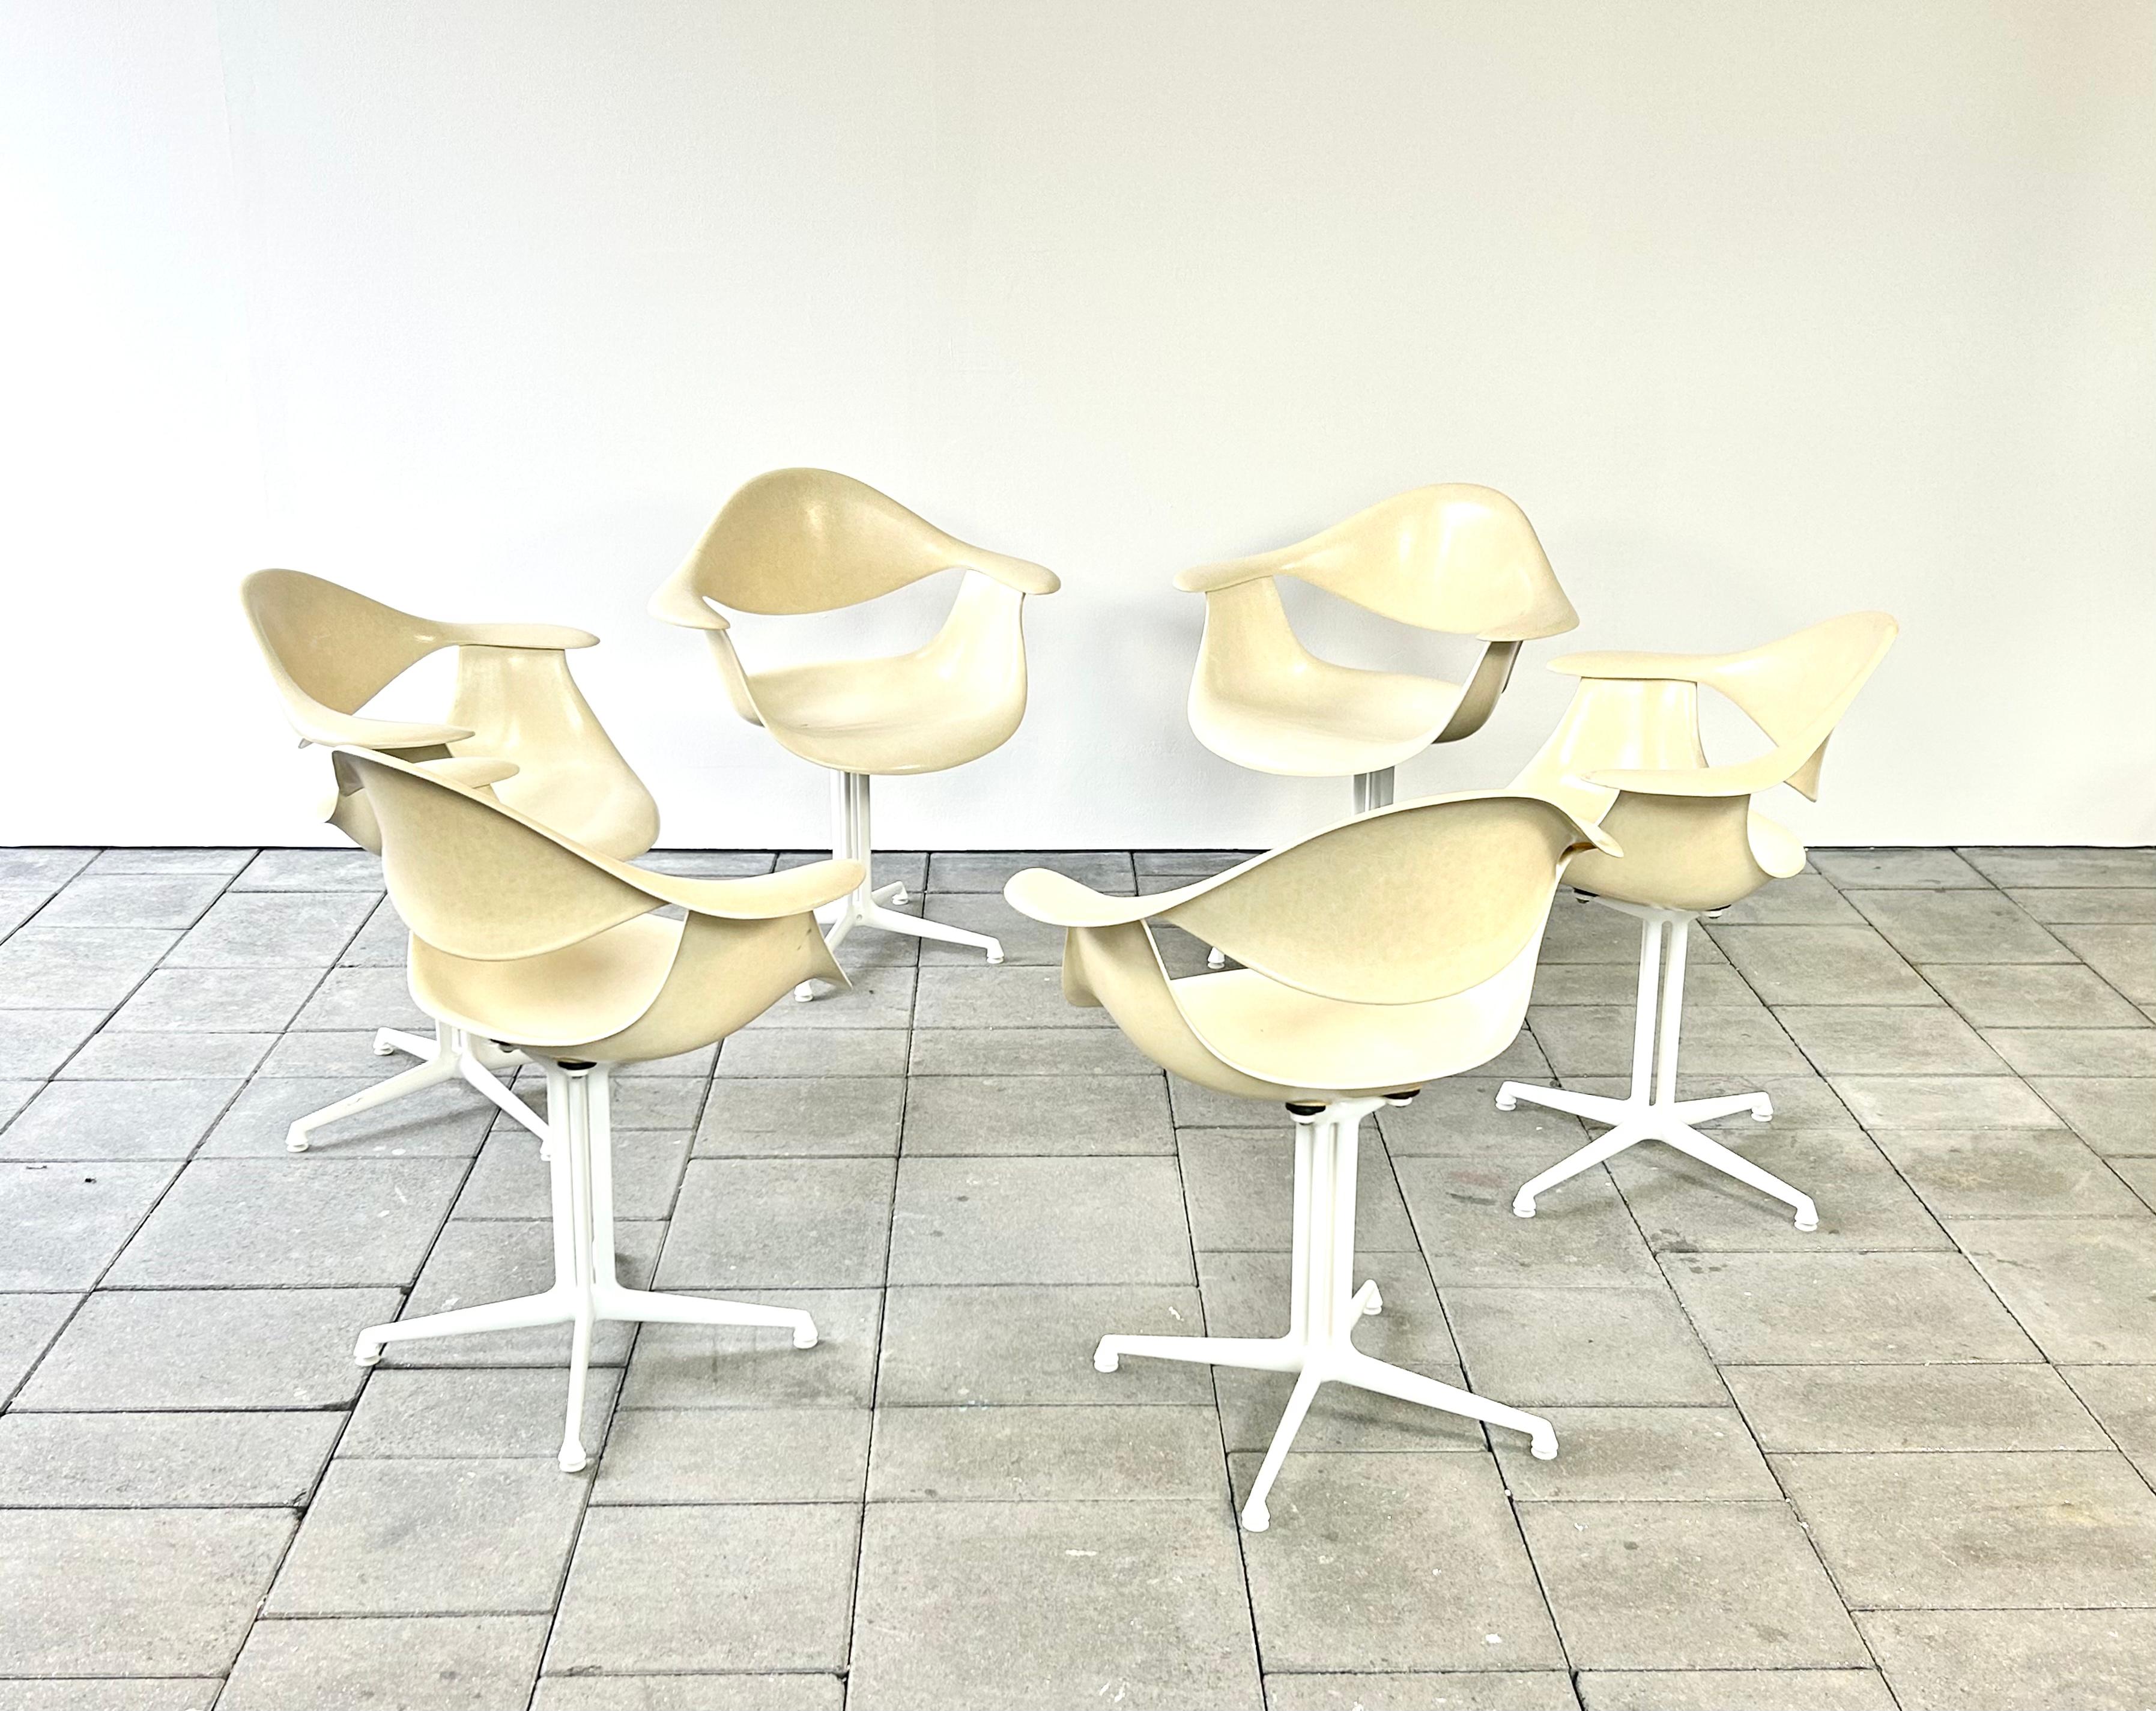 Magnifique ensemble de 6 chaises Herman Miller DAF en fibre de verre, conçues par George Nelson.

La chaise DAF convient parfaitement comme chaise de salle à manger et, grâce à son design organique, elle s'adaptera parfaitement aux grandes tables de